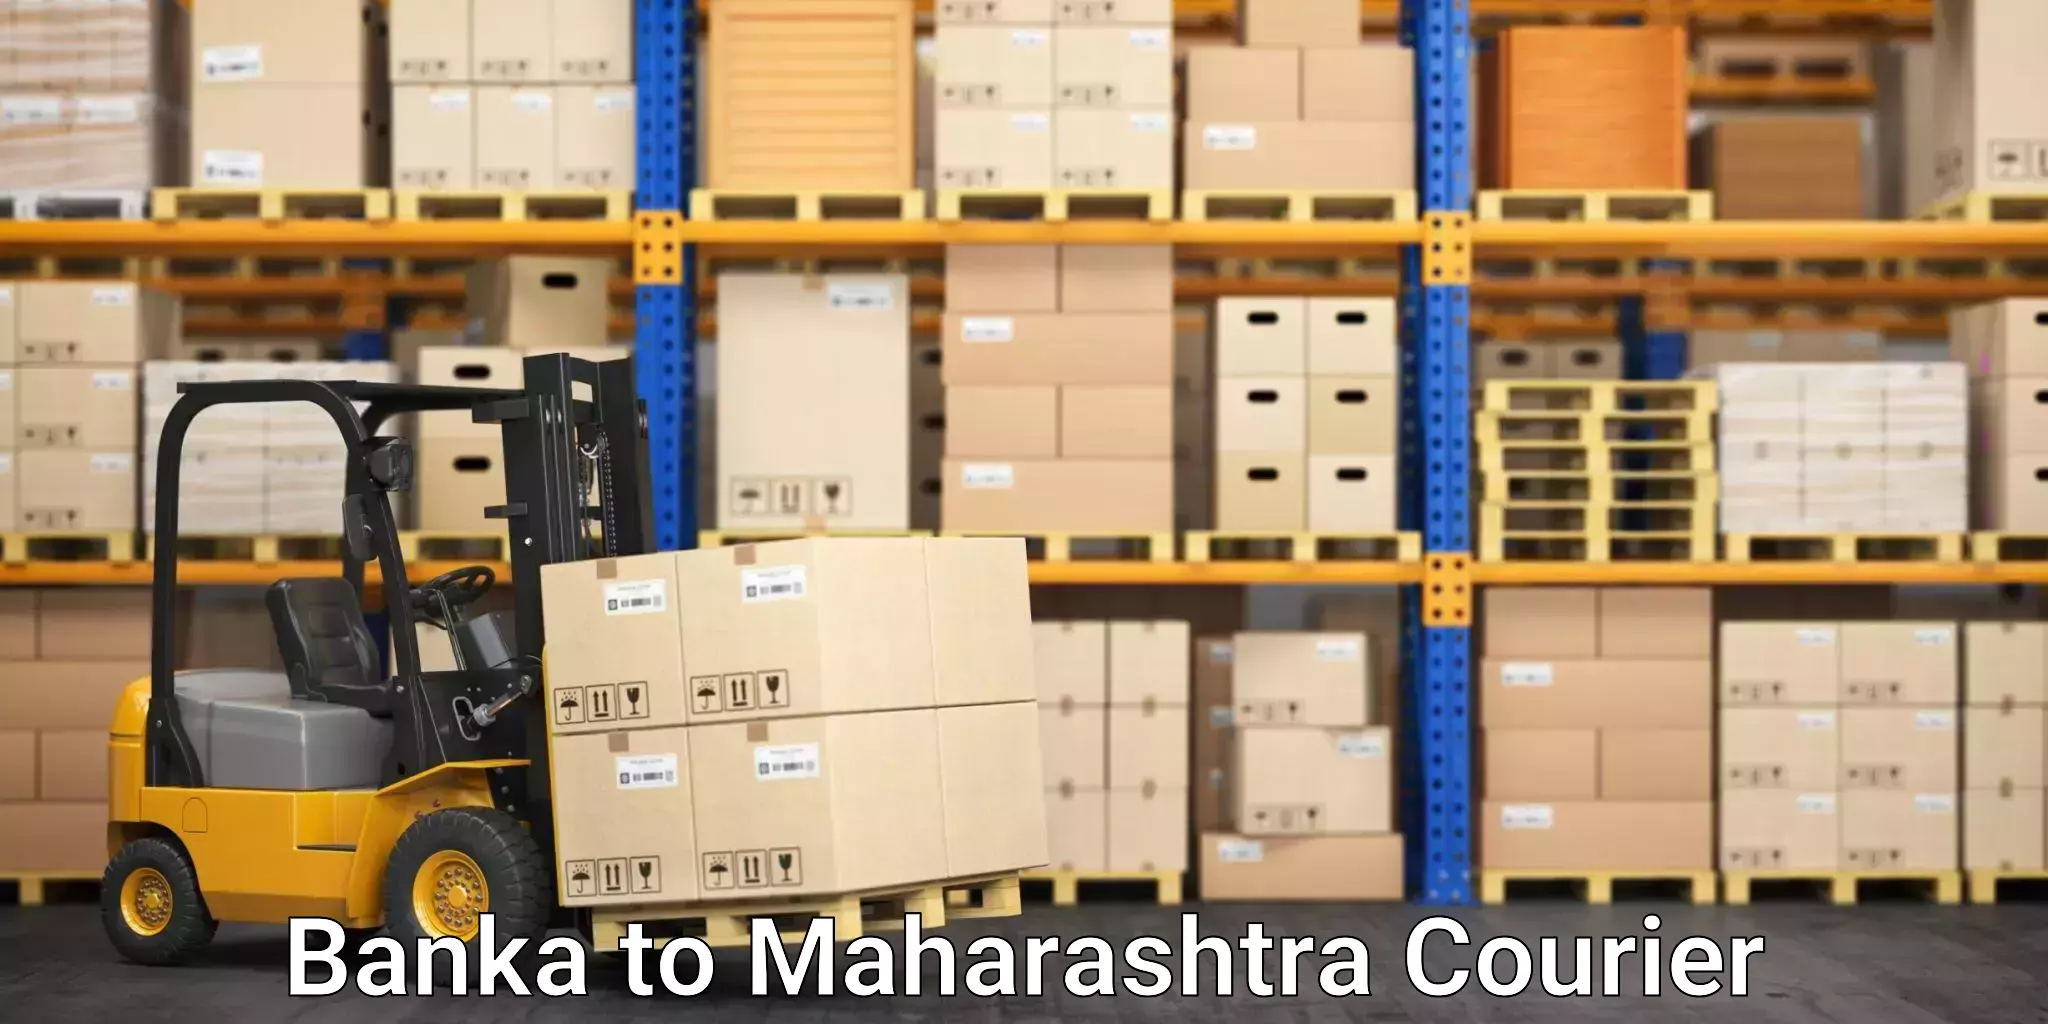 Professional moving company Banka to Maharashtra